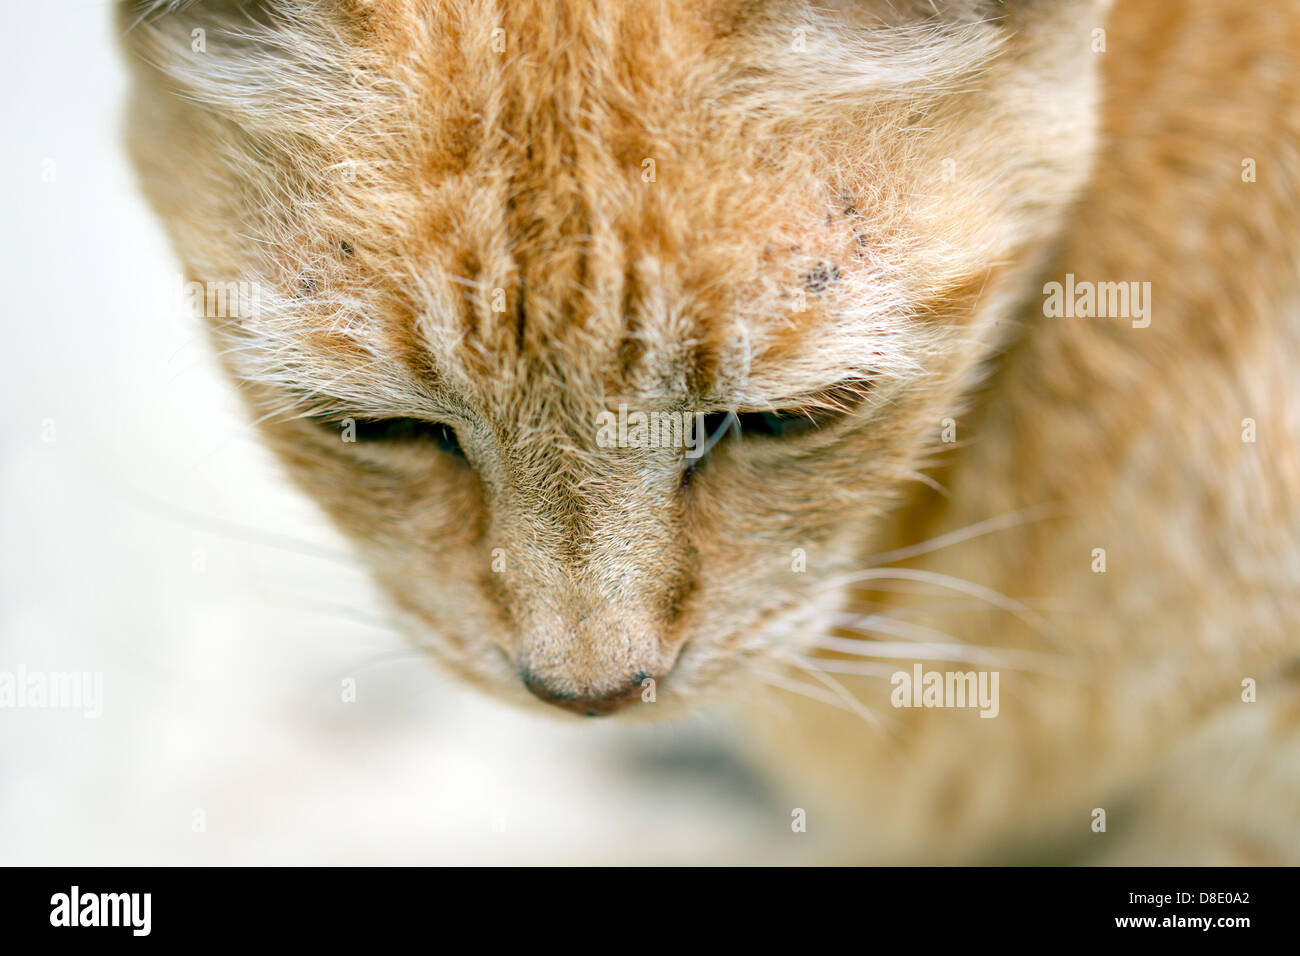 Cute tabby cat Stock Photo